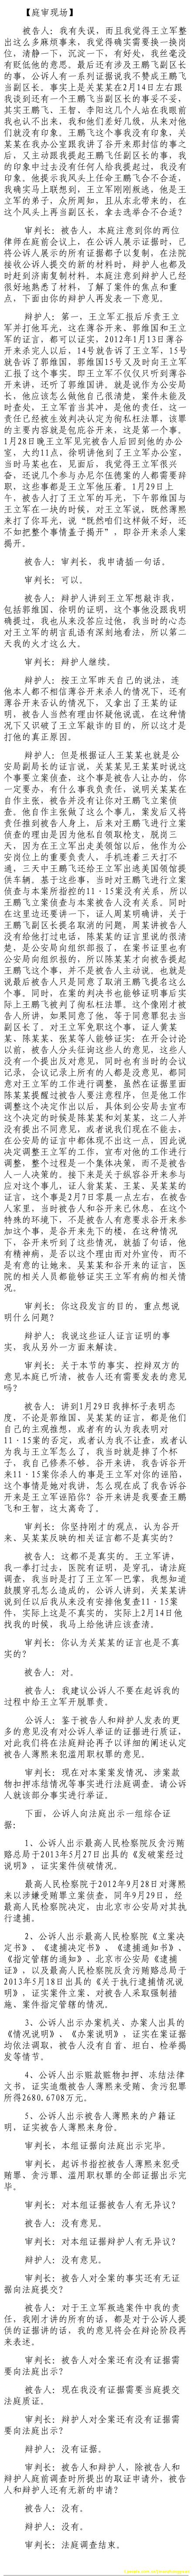 济南市中级法院官方微博公布的8月25日庭审现场记录（3）